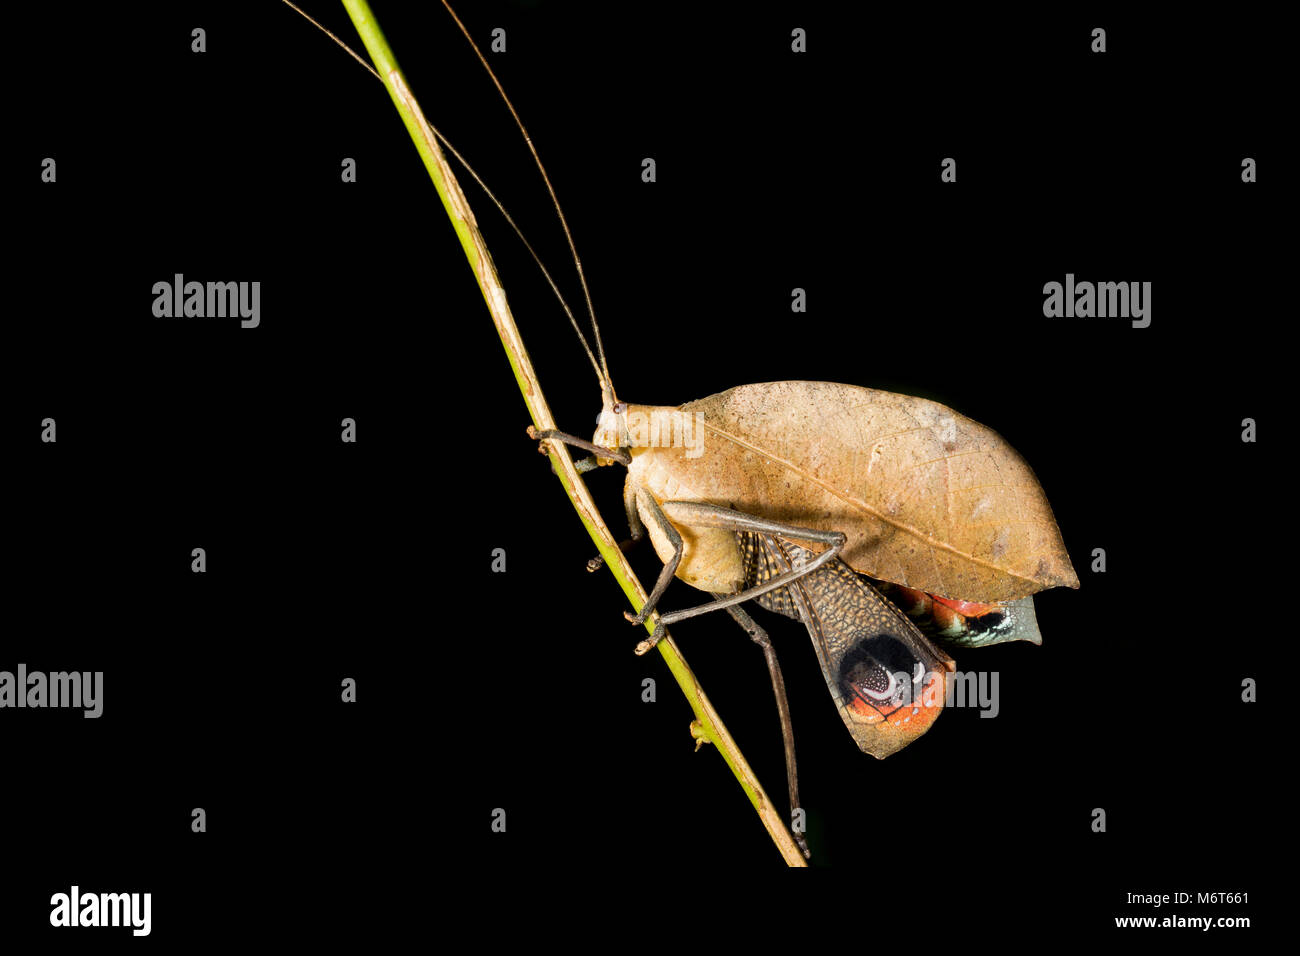 Bush Cricket oder katydid, im Dschungel in der Nähe von Bakhuis, Suriname, Südamerika fotografiert. Stockfoto